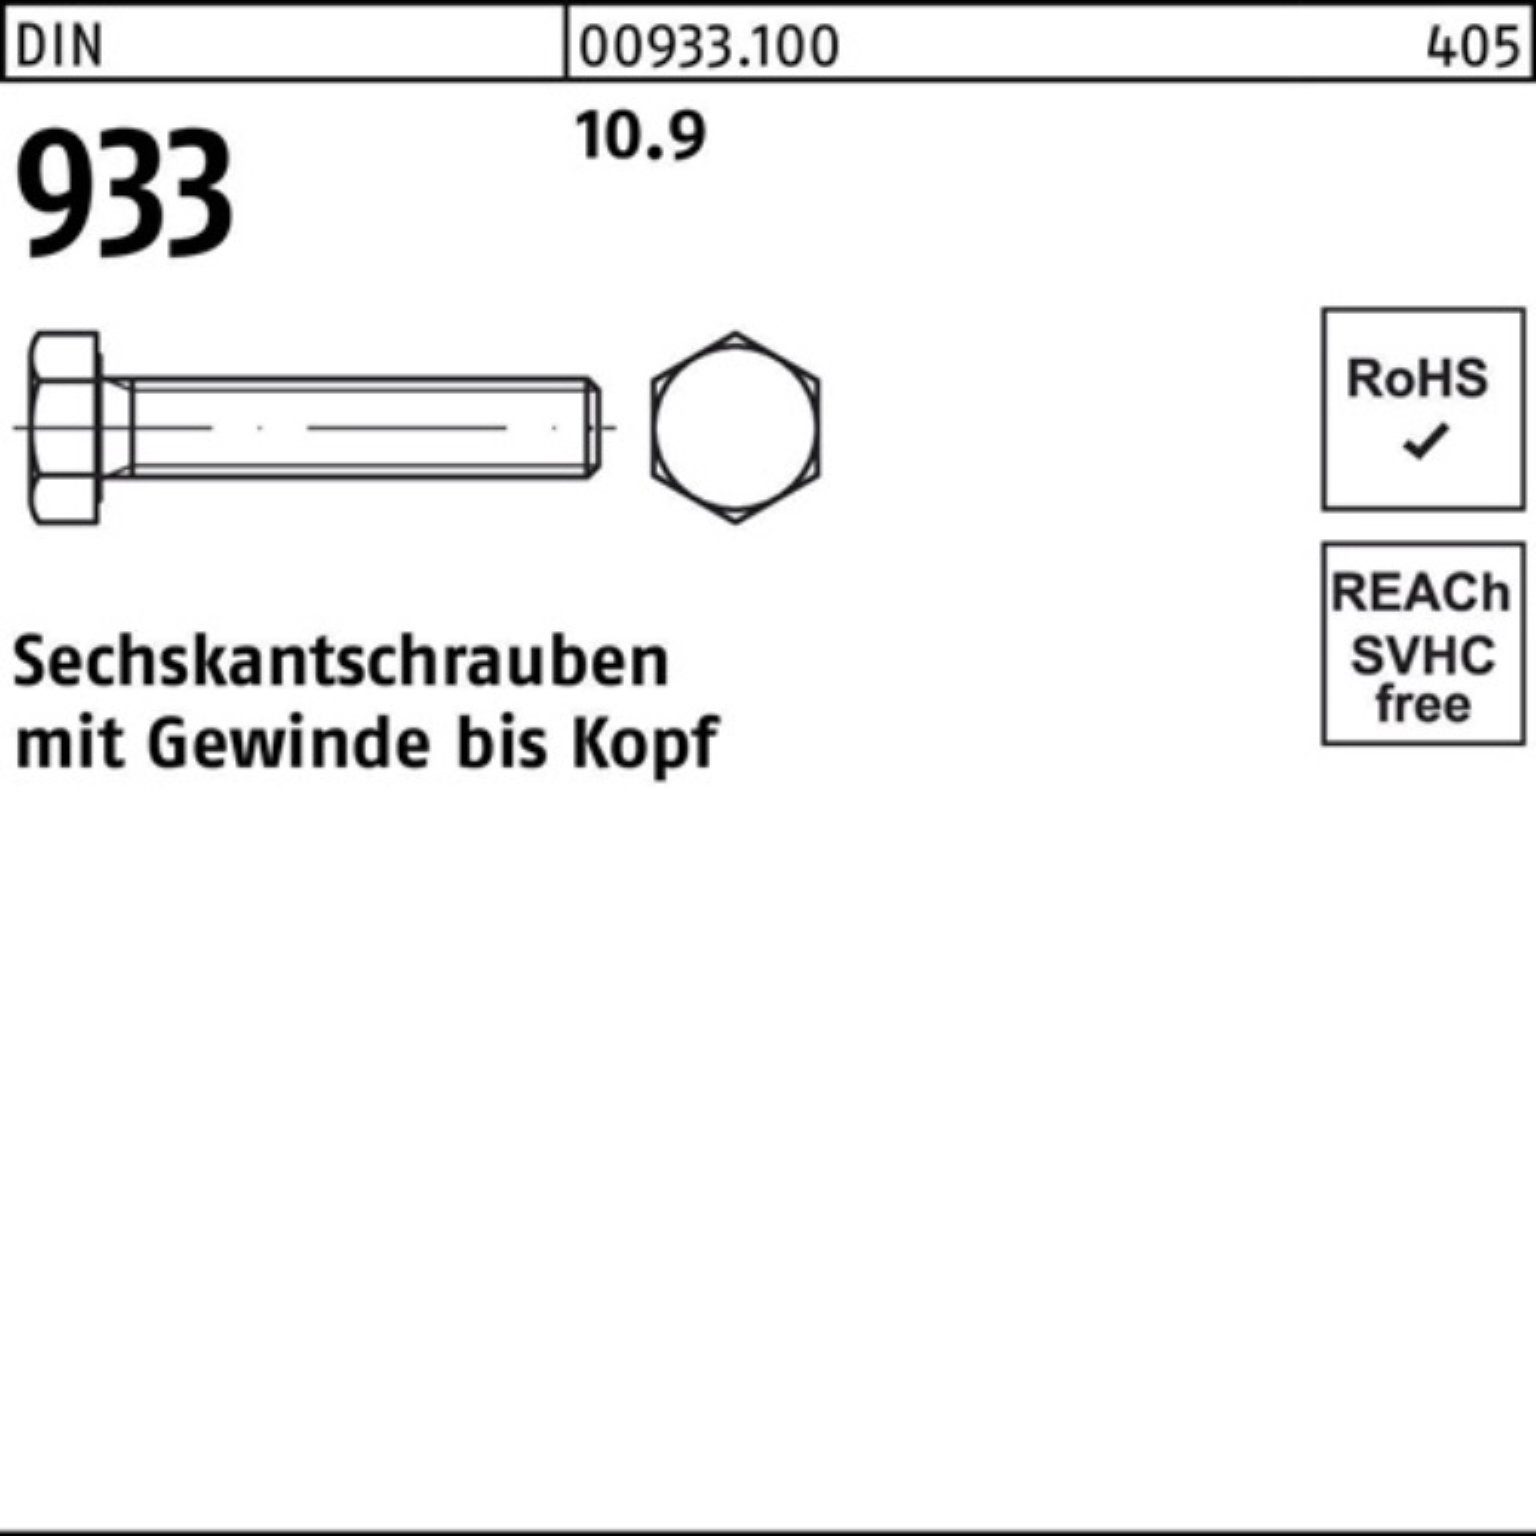 Sechskantschraube Reyher 100er 75 1 M30x 10.9 Pack VG Stück 933 Sechskantschraube 933 DIN DIN